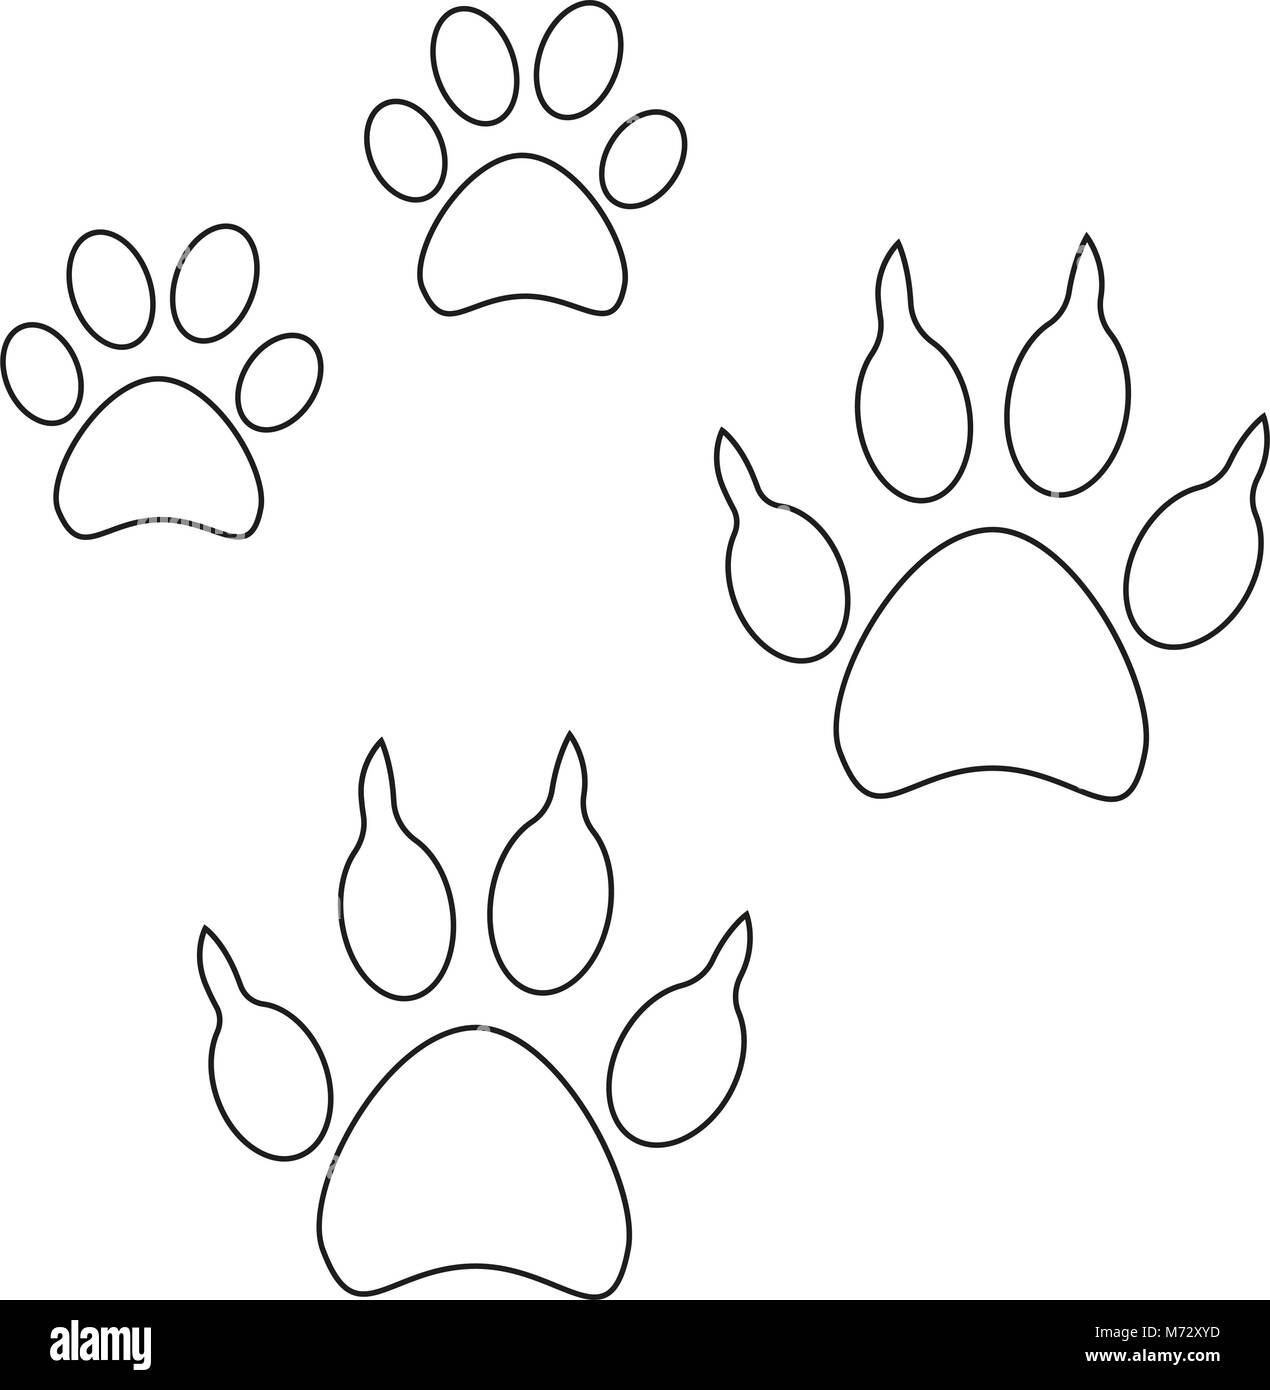 Line art gatto cane impronta della zampa icon set poster. Bianco e nero  illustrazione vettoriale per la carta regalo, flyer, certificato o banner,  icona, logo, patch, st Immagine e Vettoriale - Alamy